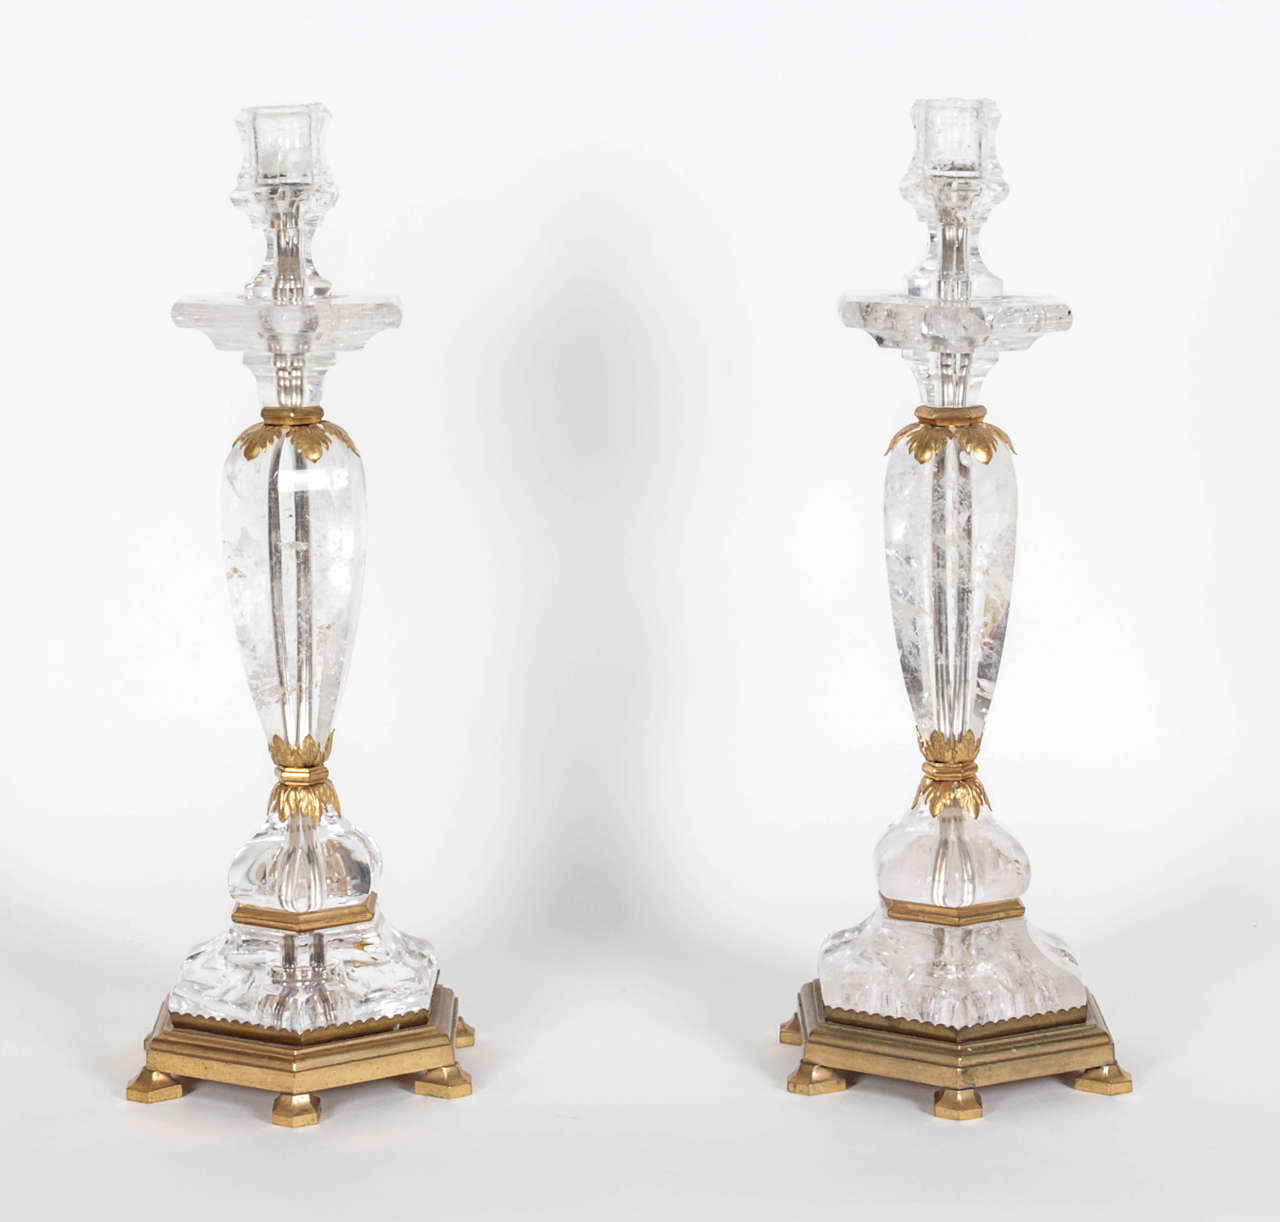 Cette paire de chandeliers exquis a été vendue par Bonzano, une entreprise parisienne spécialisée dans les objets en cristal de roche montés sur du bronze doré.  Ils ont un canal intérieur pour permettre l'électrification comme lampes. Le modèle a